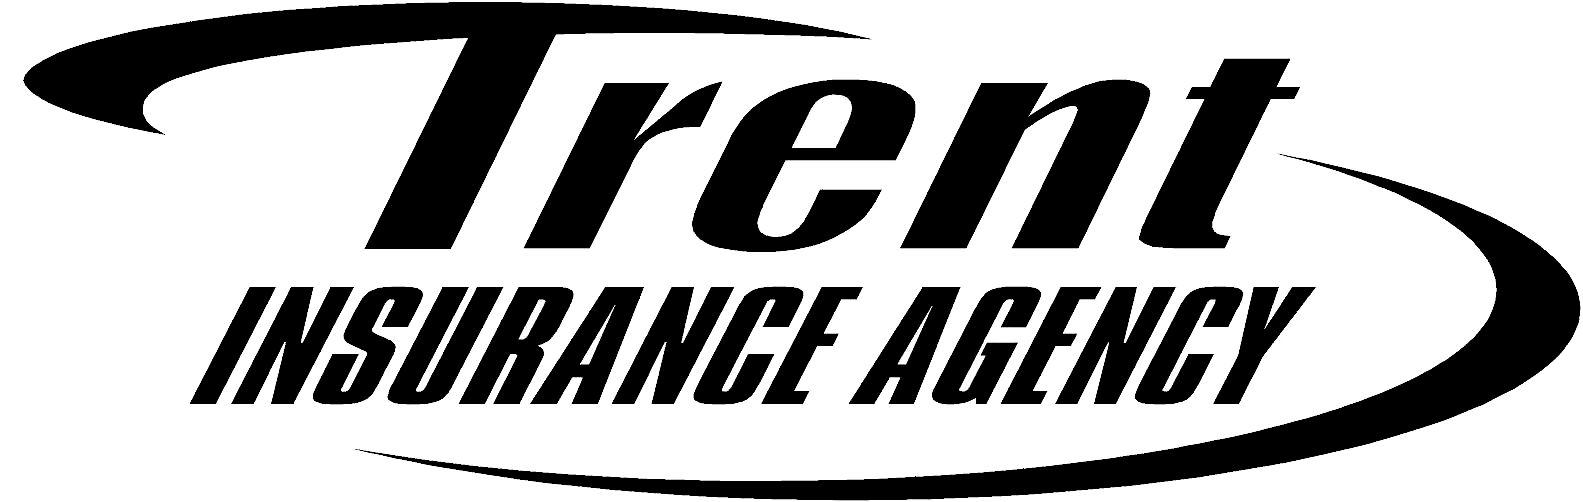 Trent Insurance